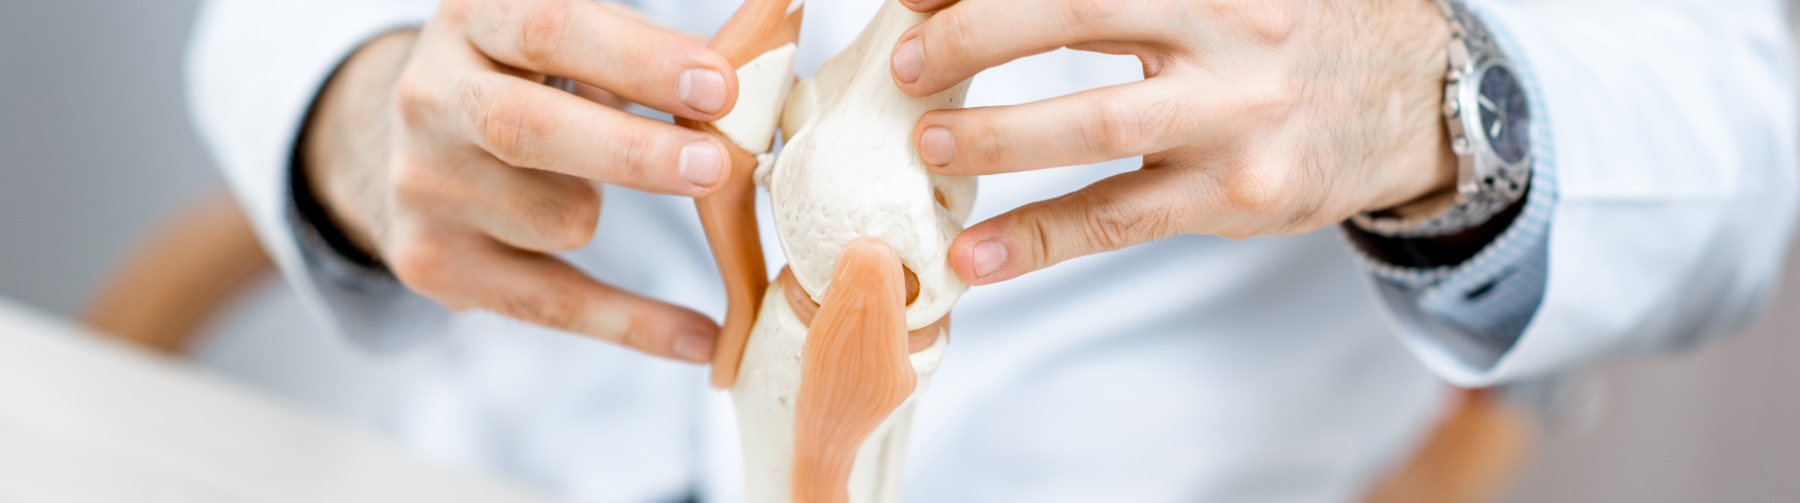 Хрустят суставы по всему телу: причины и лечение, что делать при хрусте суставов | Клиника Temed